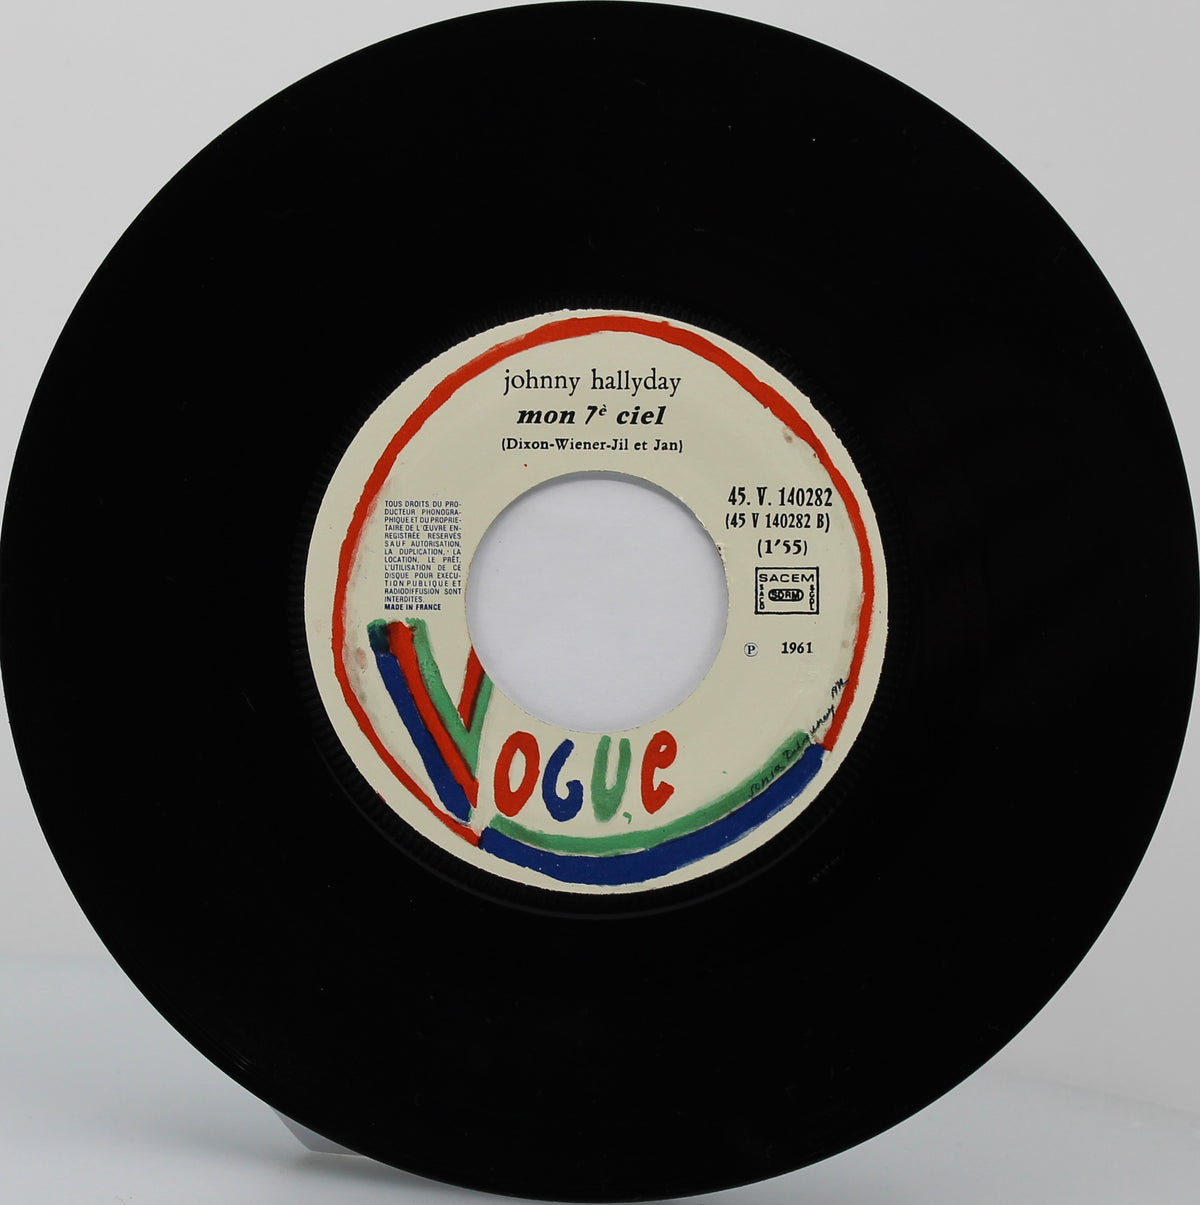 Johnny Hallyday ‎– Nous Les Gars, Nous Les Filles / Mon 7ème Ciel, Vinyl, 7&quot;, 45 RPM, Single, Reissue, France 1977